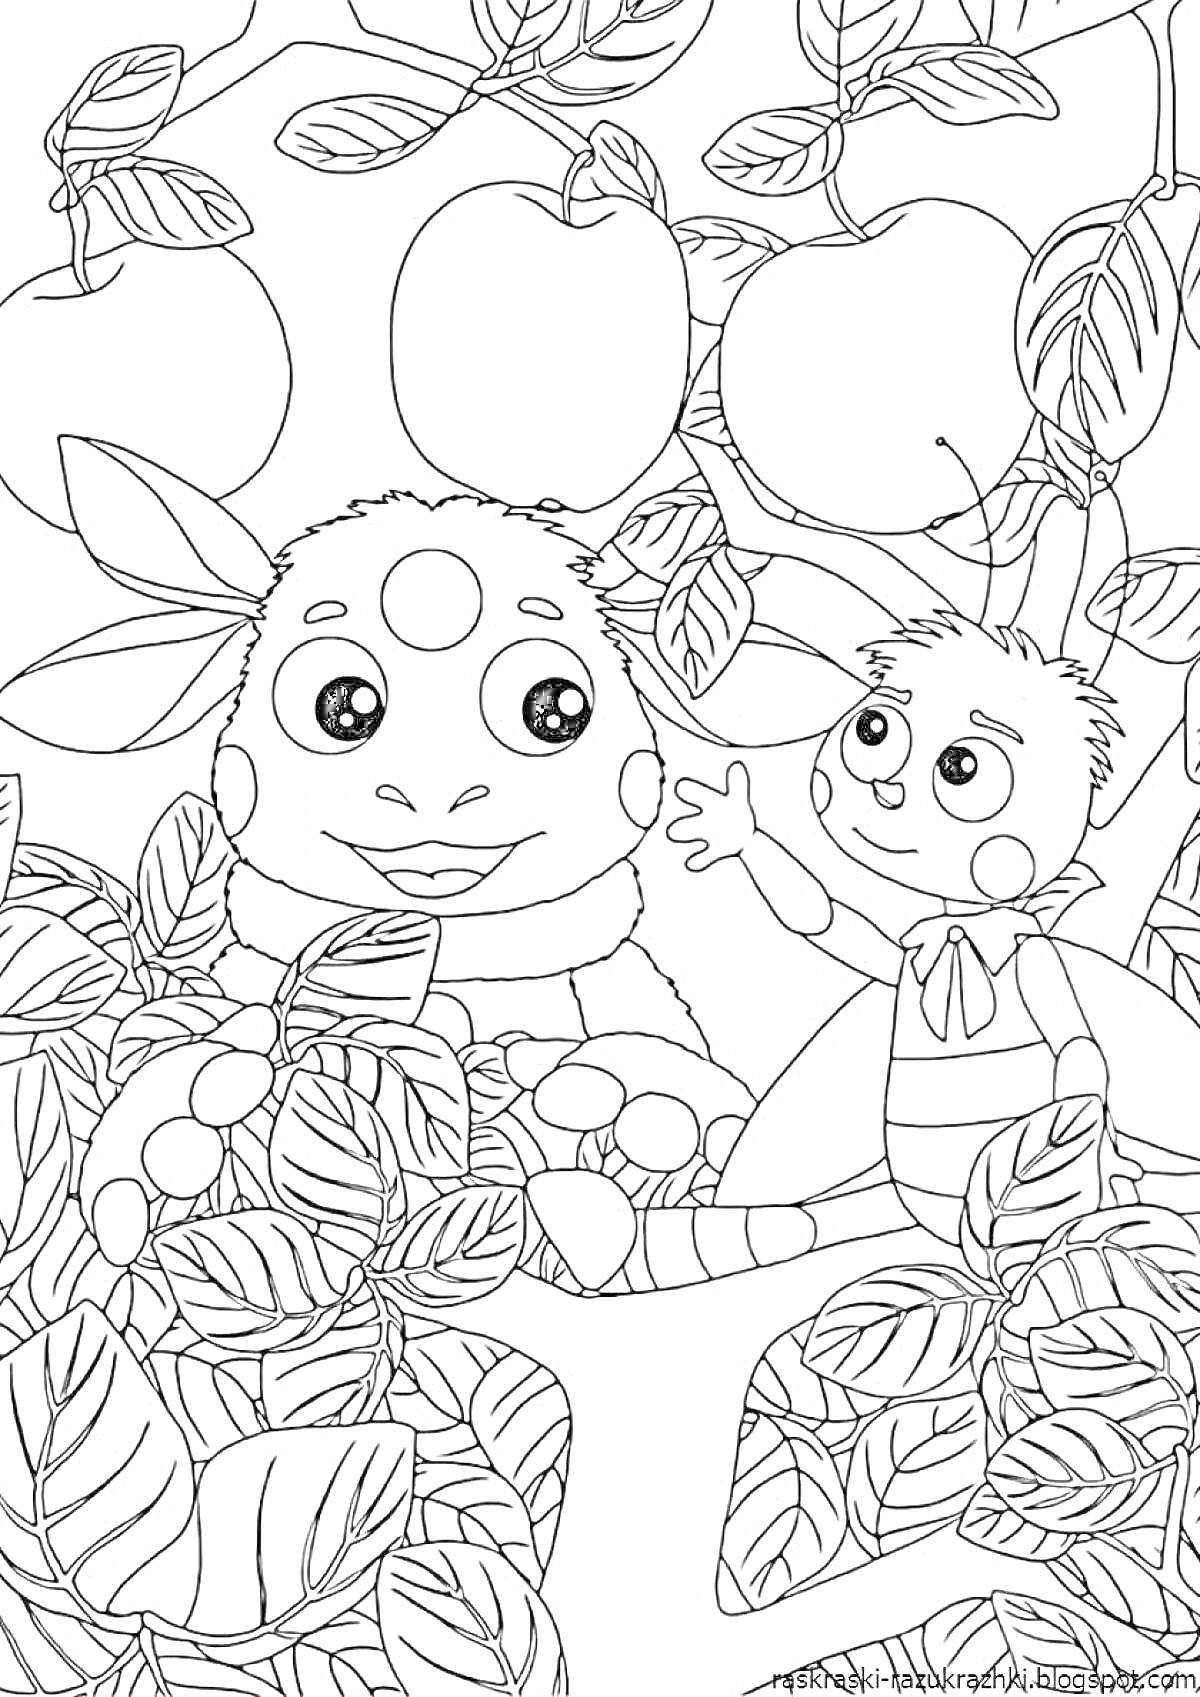 Раскраска Лунтик и его друг среди листвы и яблок